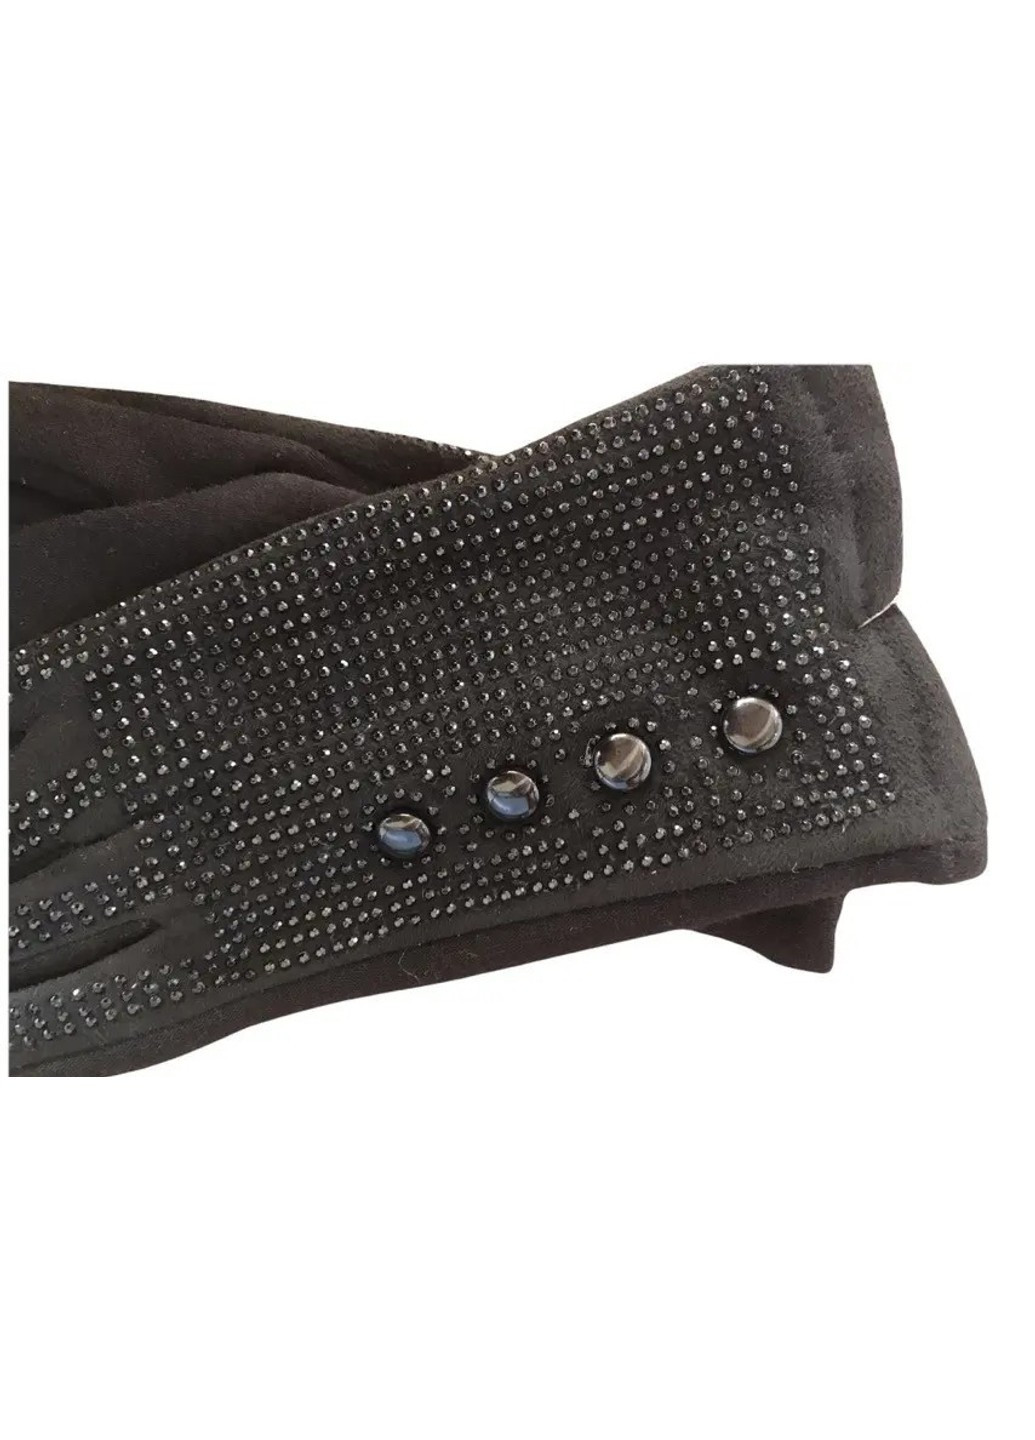 Женские стрейчевые перчатки чёрные 196s1 S BR-S (261771633)